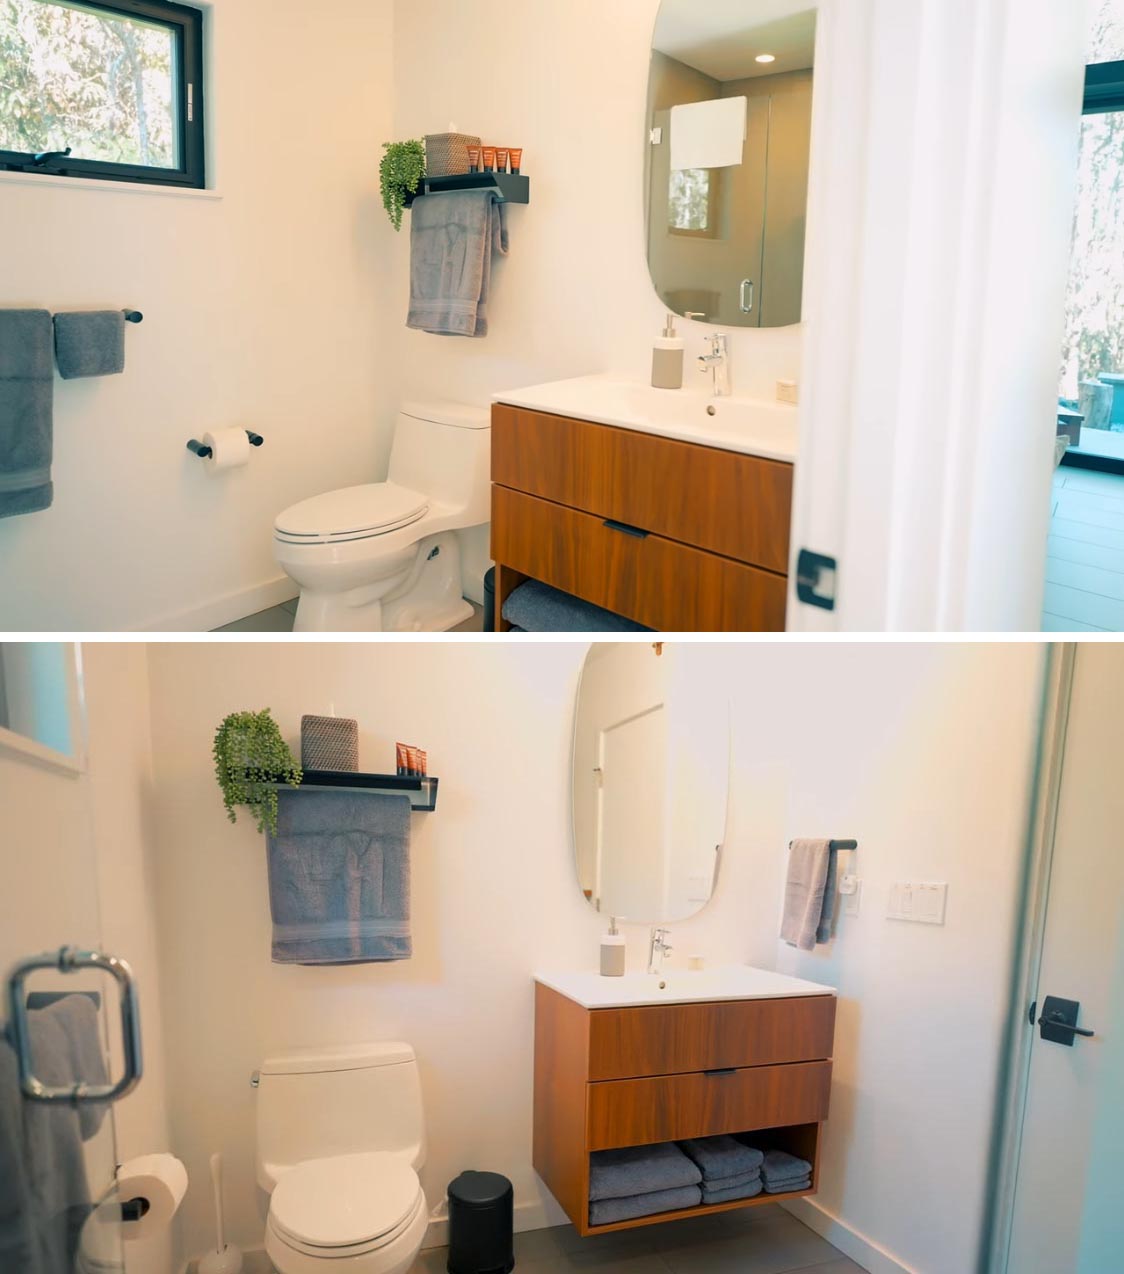 Крошечная домашняя ванная комната с деревянным туалетным столиком, изогнутым зеркалом и застекленной душевой кабиной.